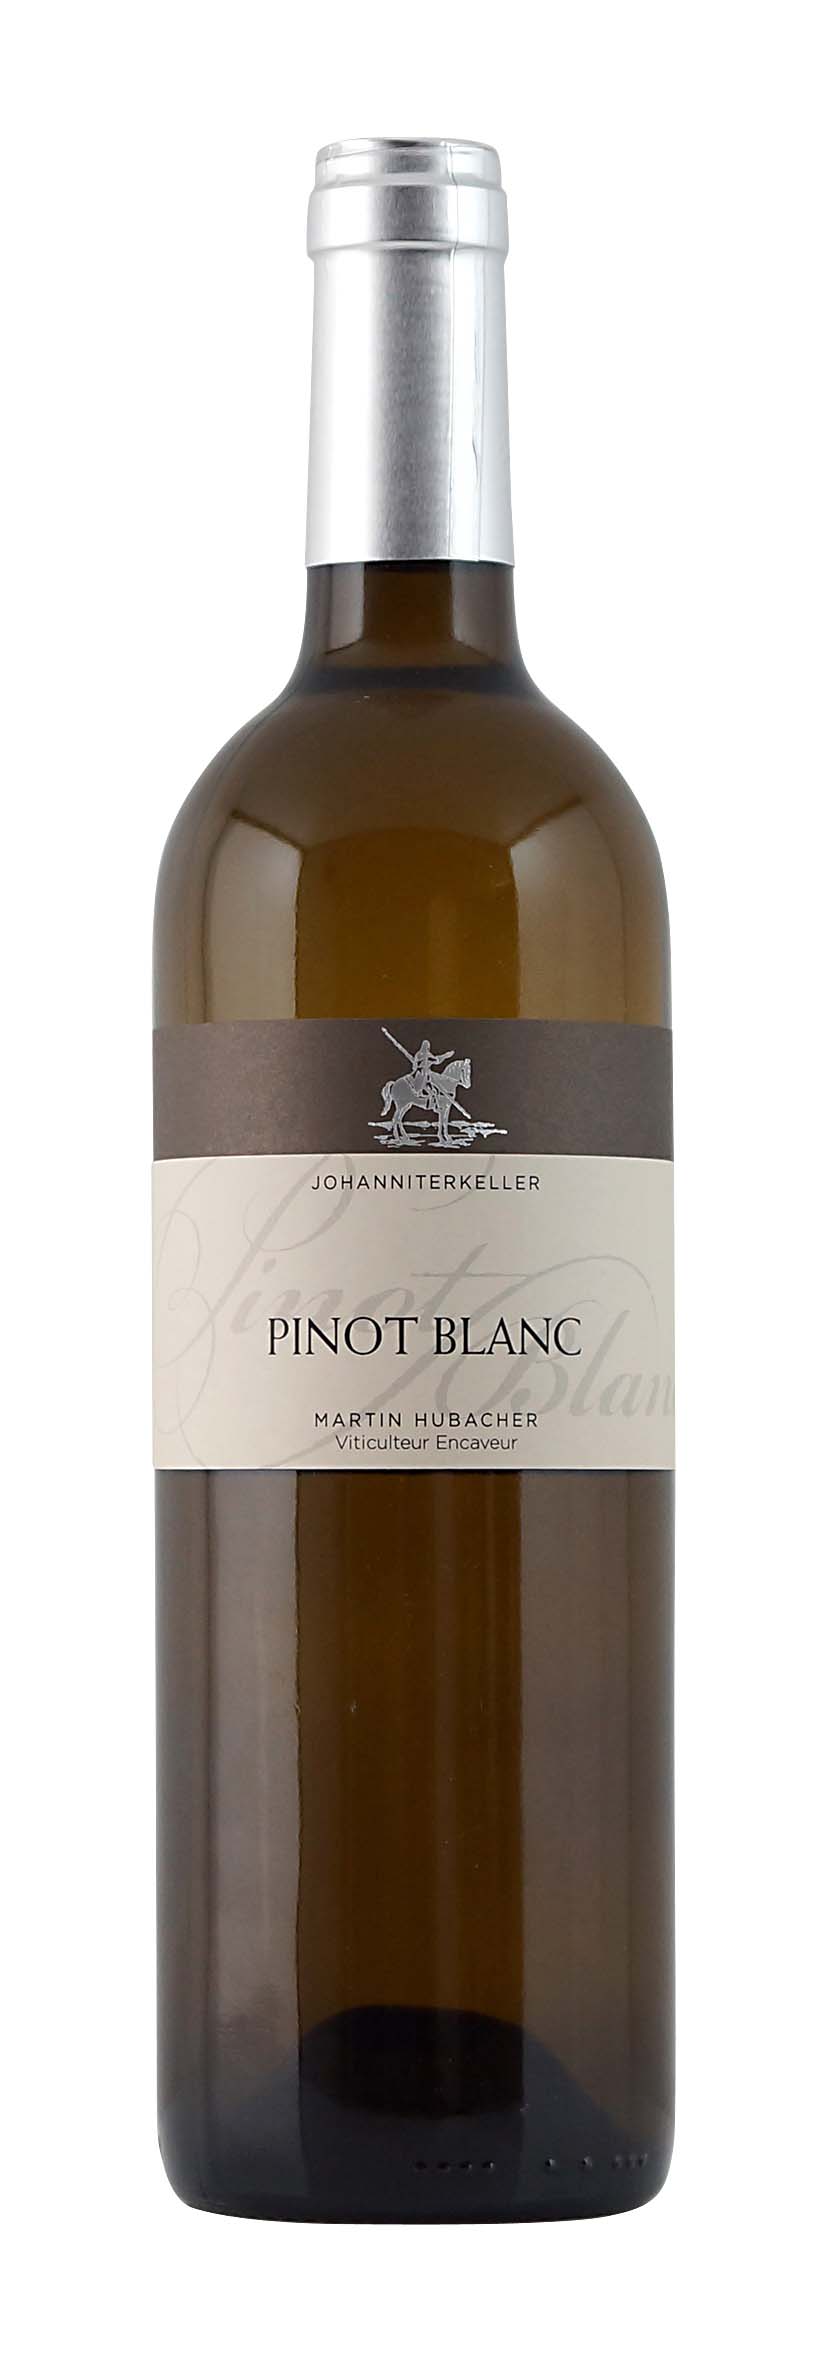 Lac de Bienne AOC Pinot Blanc 2012